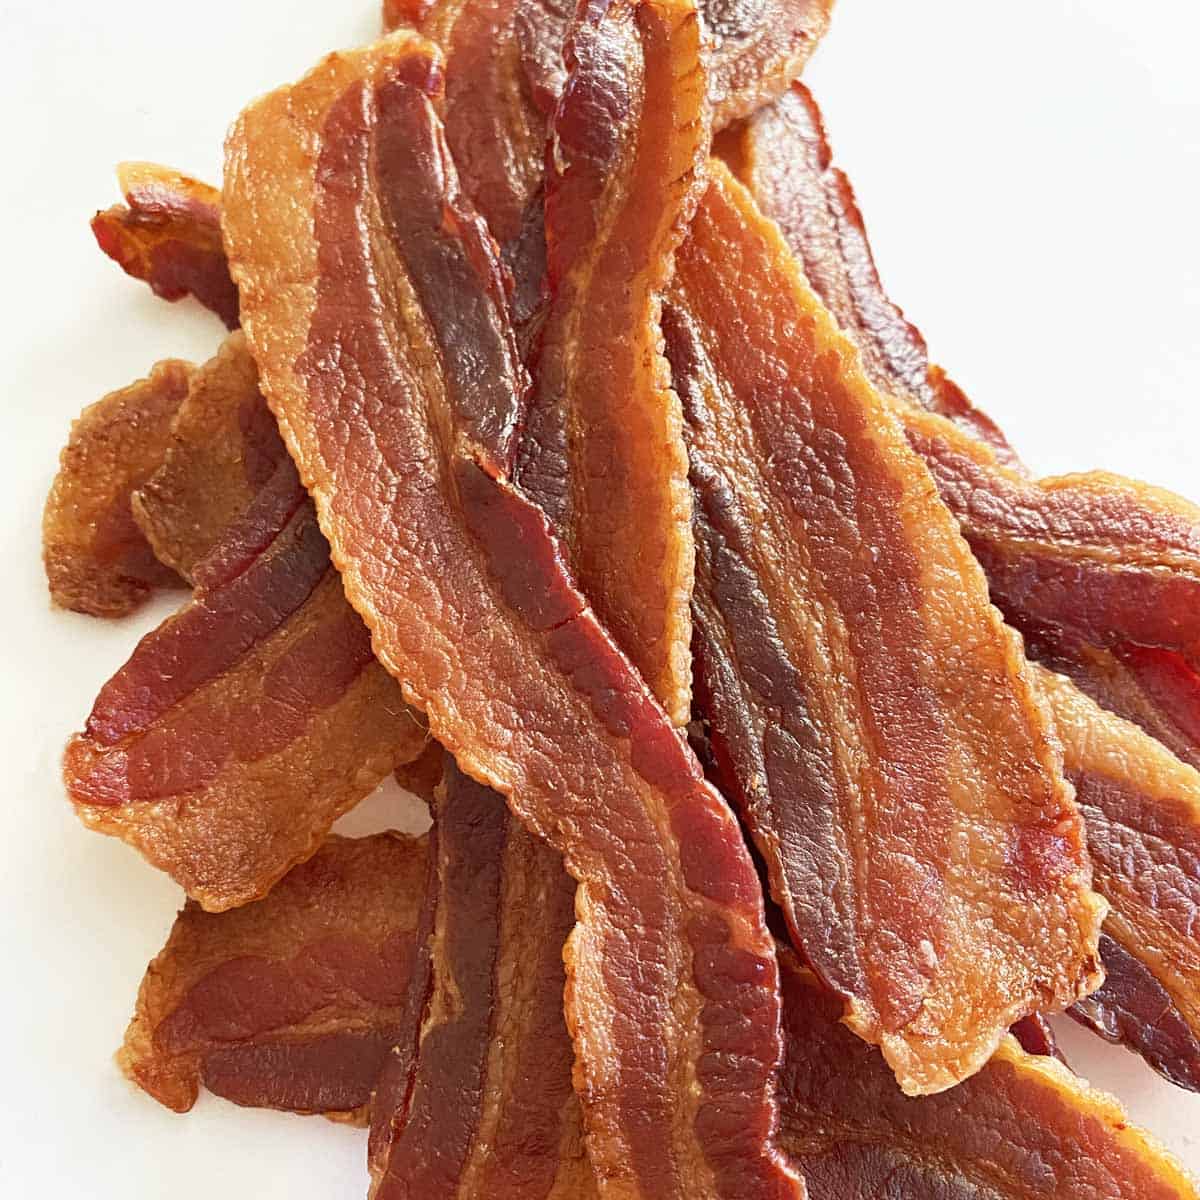 https://bensabaconlovers.com/wp-content/uploads/2021/10/bacon-jerky-recipe-featured.jpg